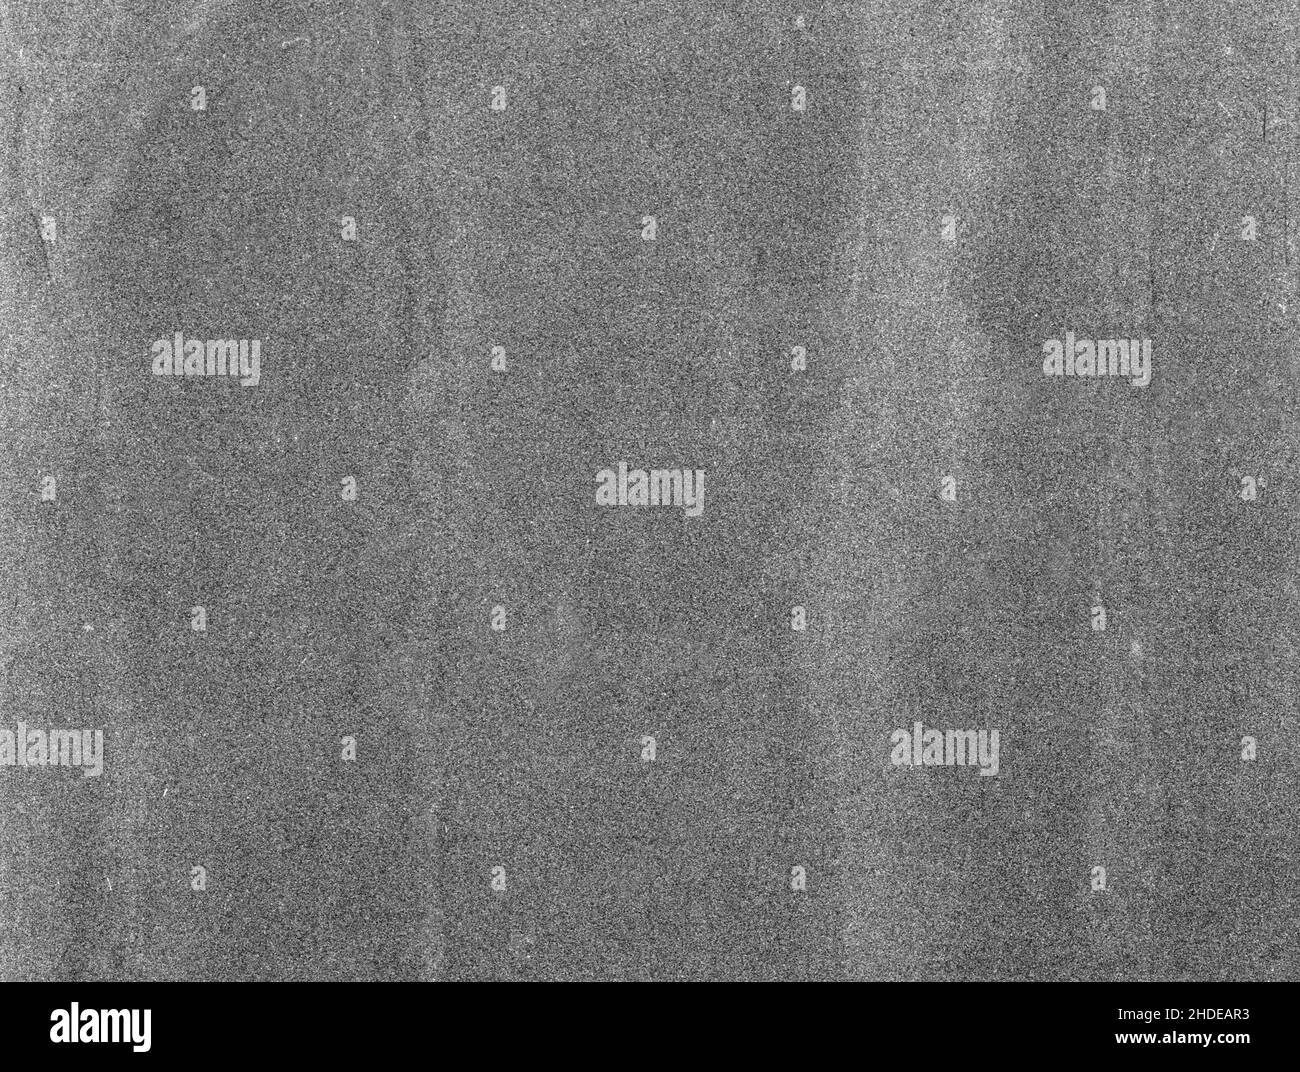 Texture noise paper Banque d'images noir et blanc - Page 2 - Alamy